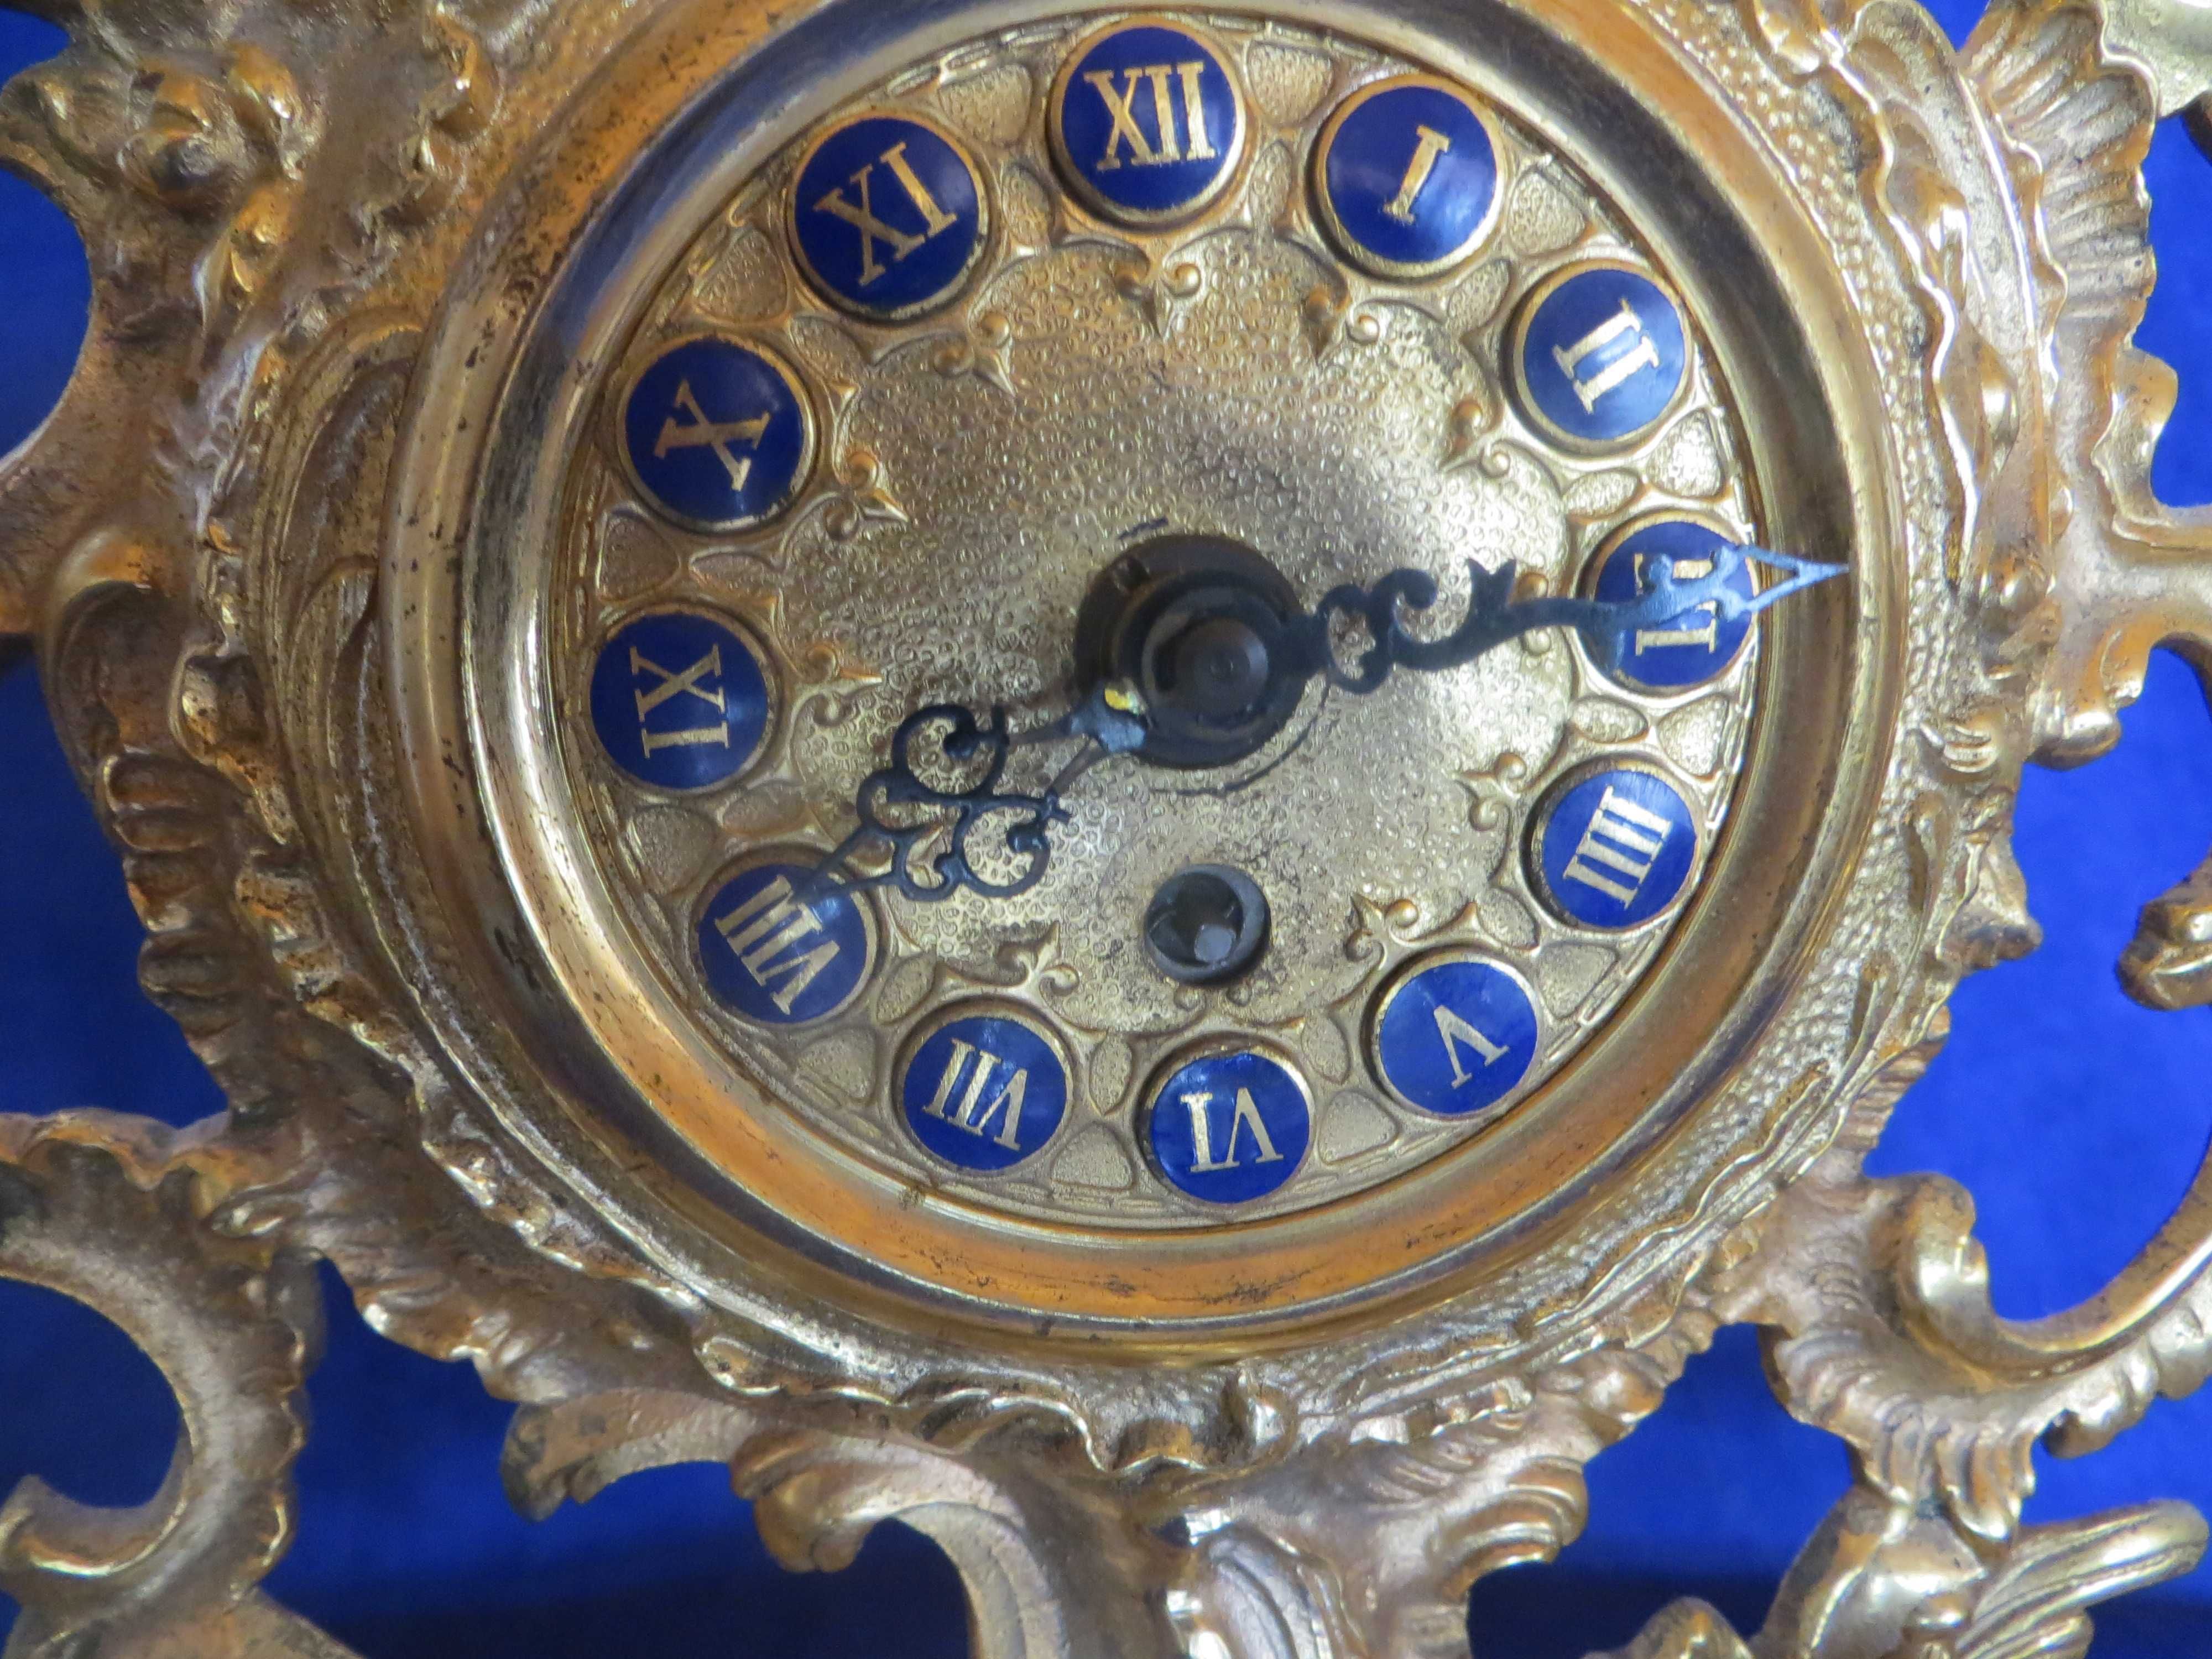 Каминен бароков часовник